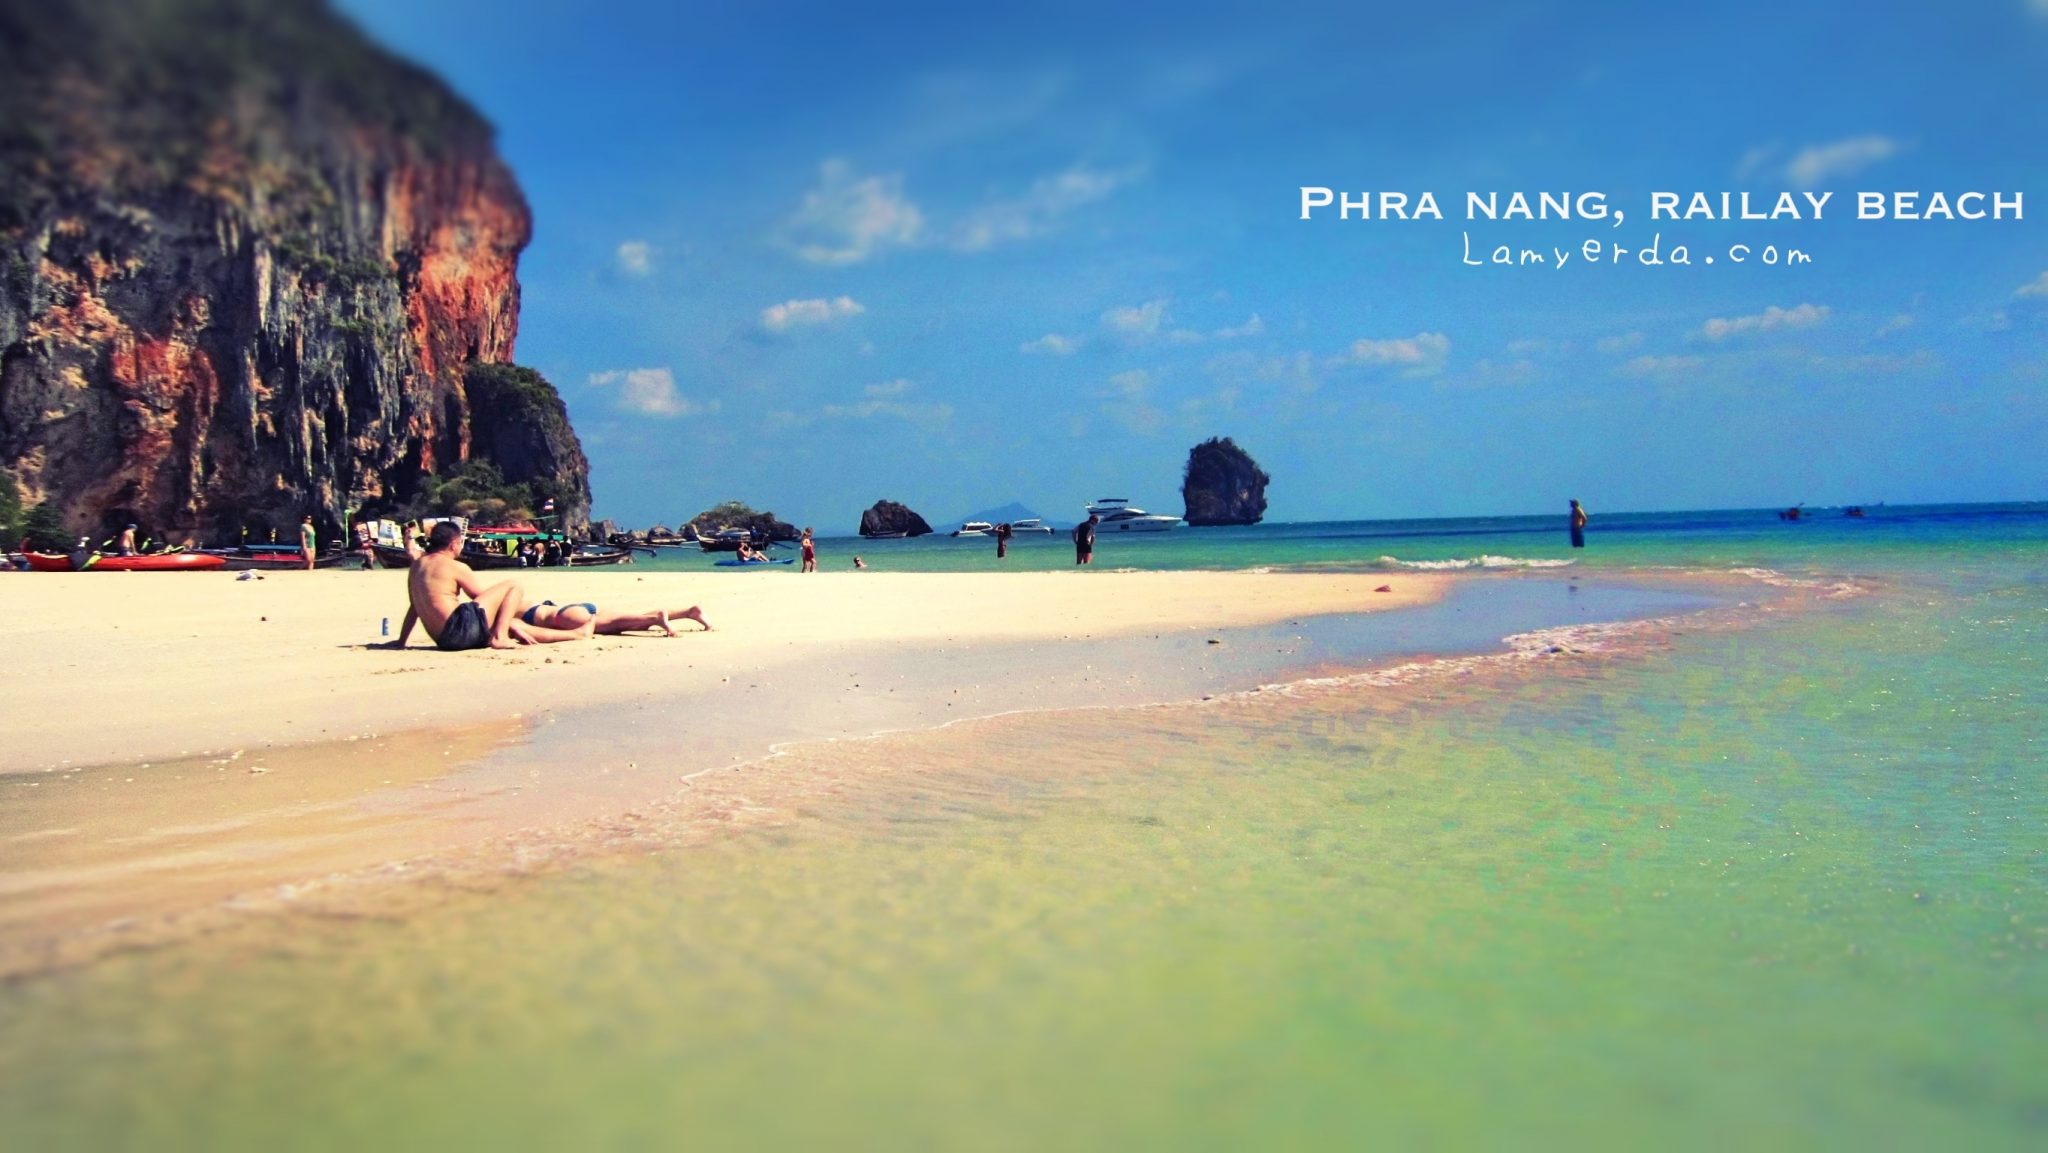 Phra Nang Beach: Railay